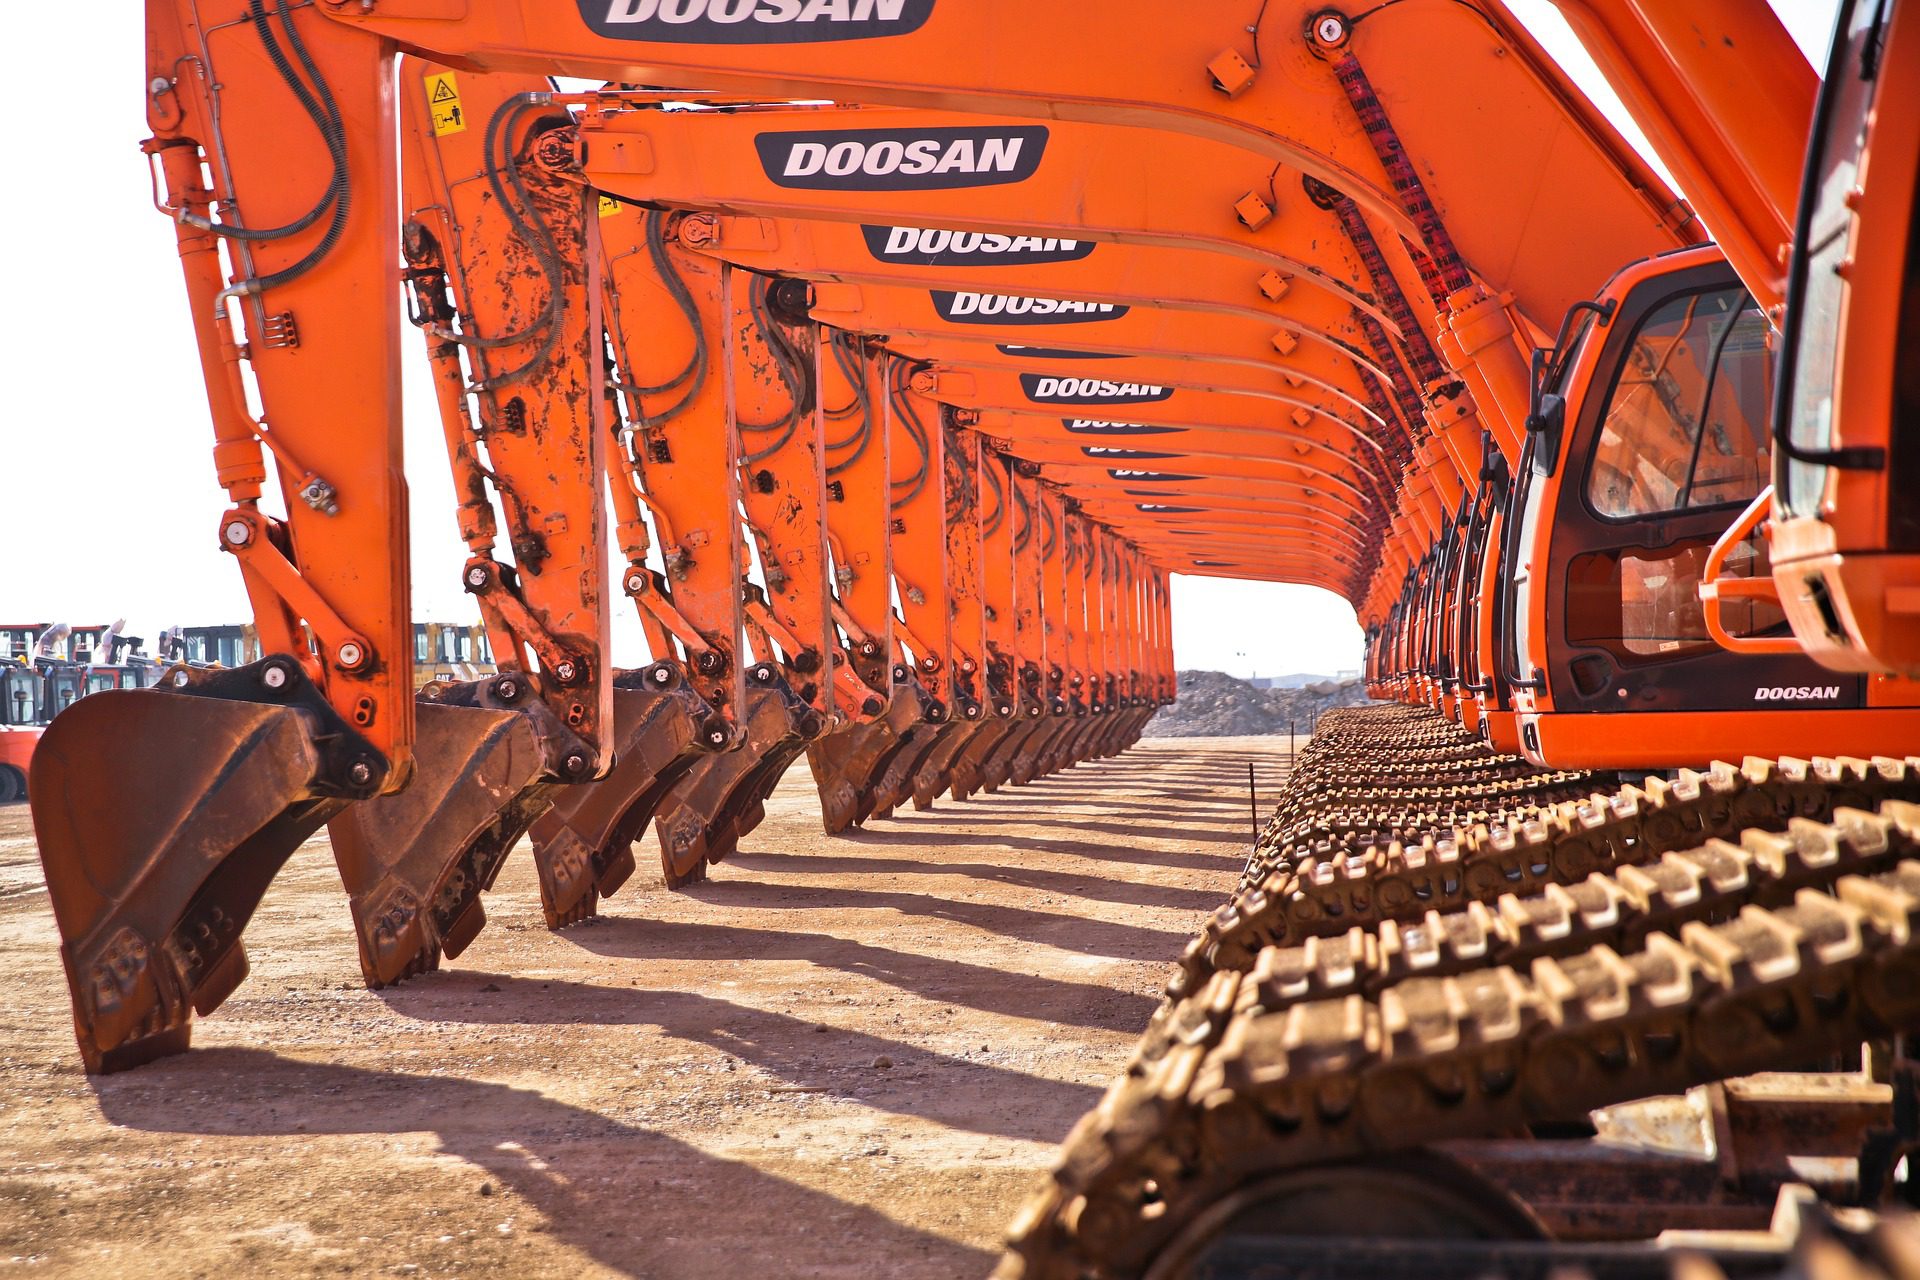 A row of Doosan excavators at a lease dealership